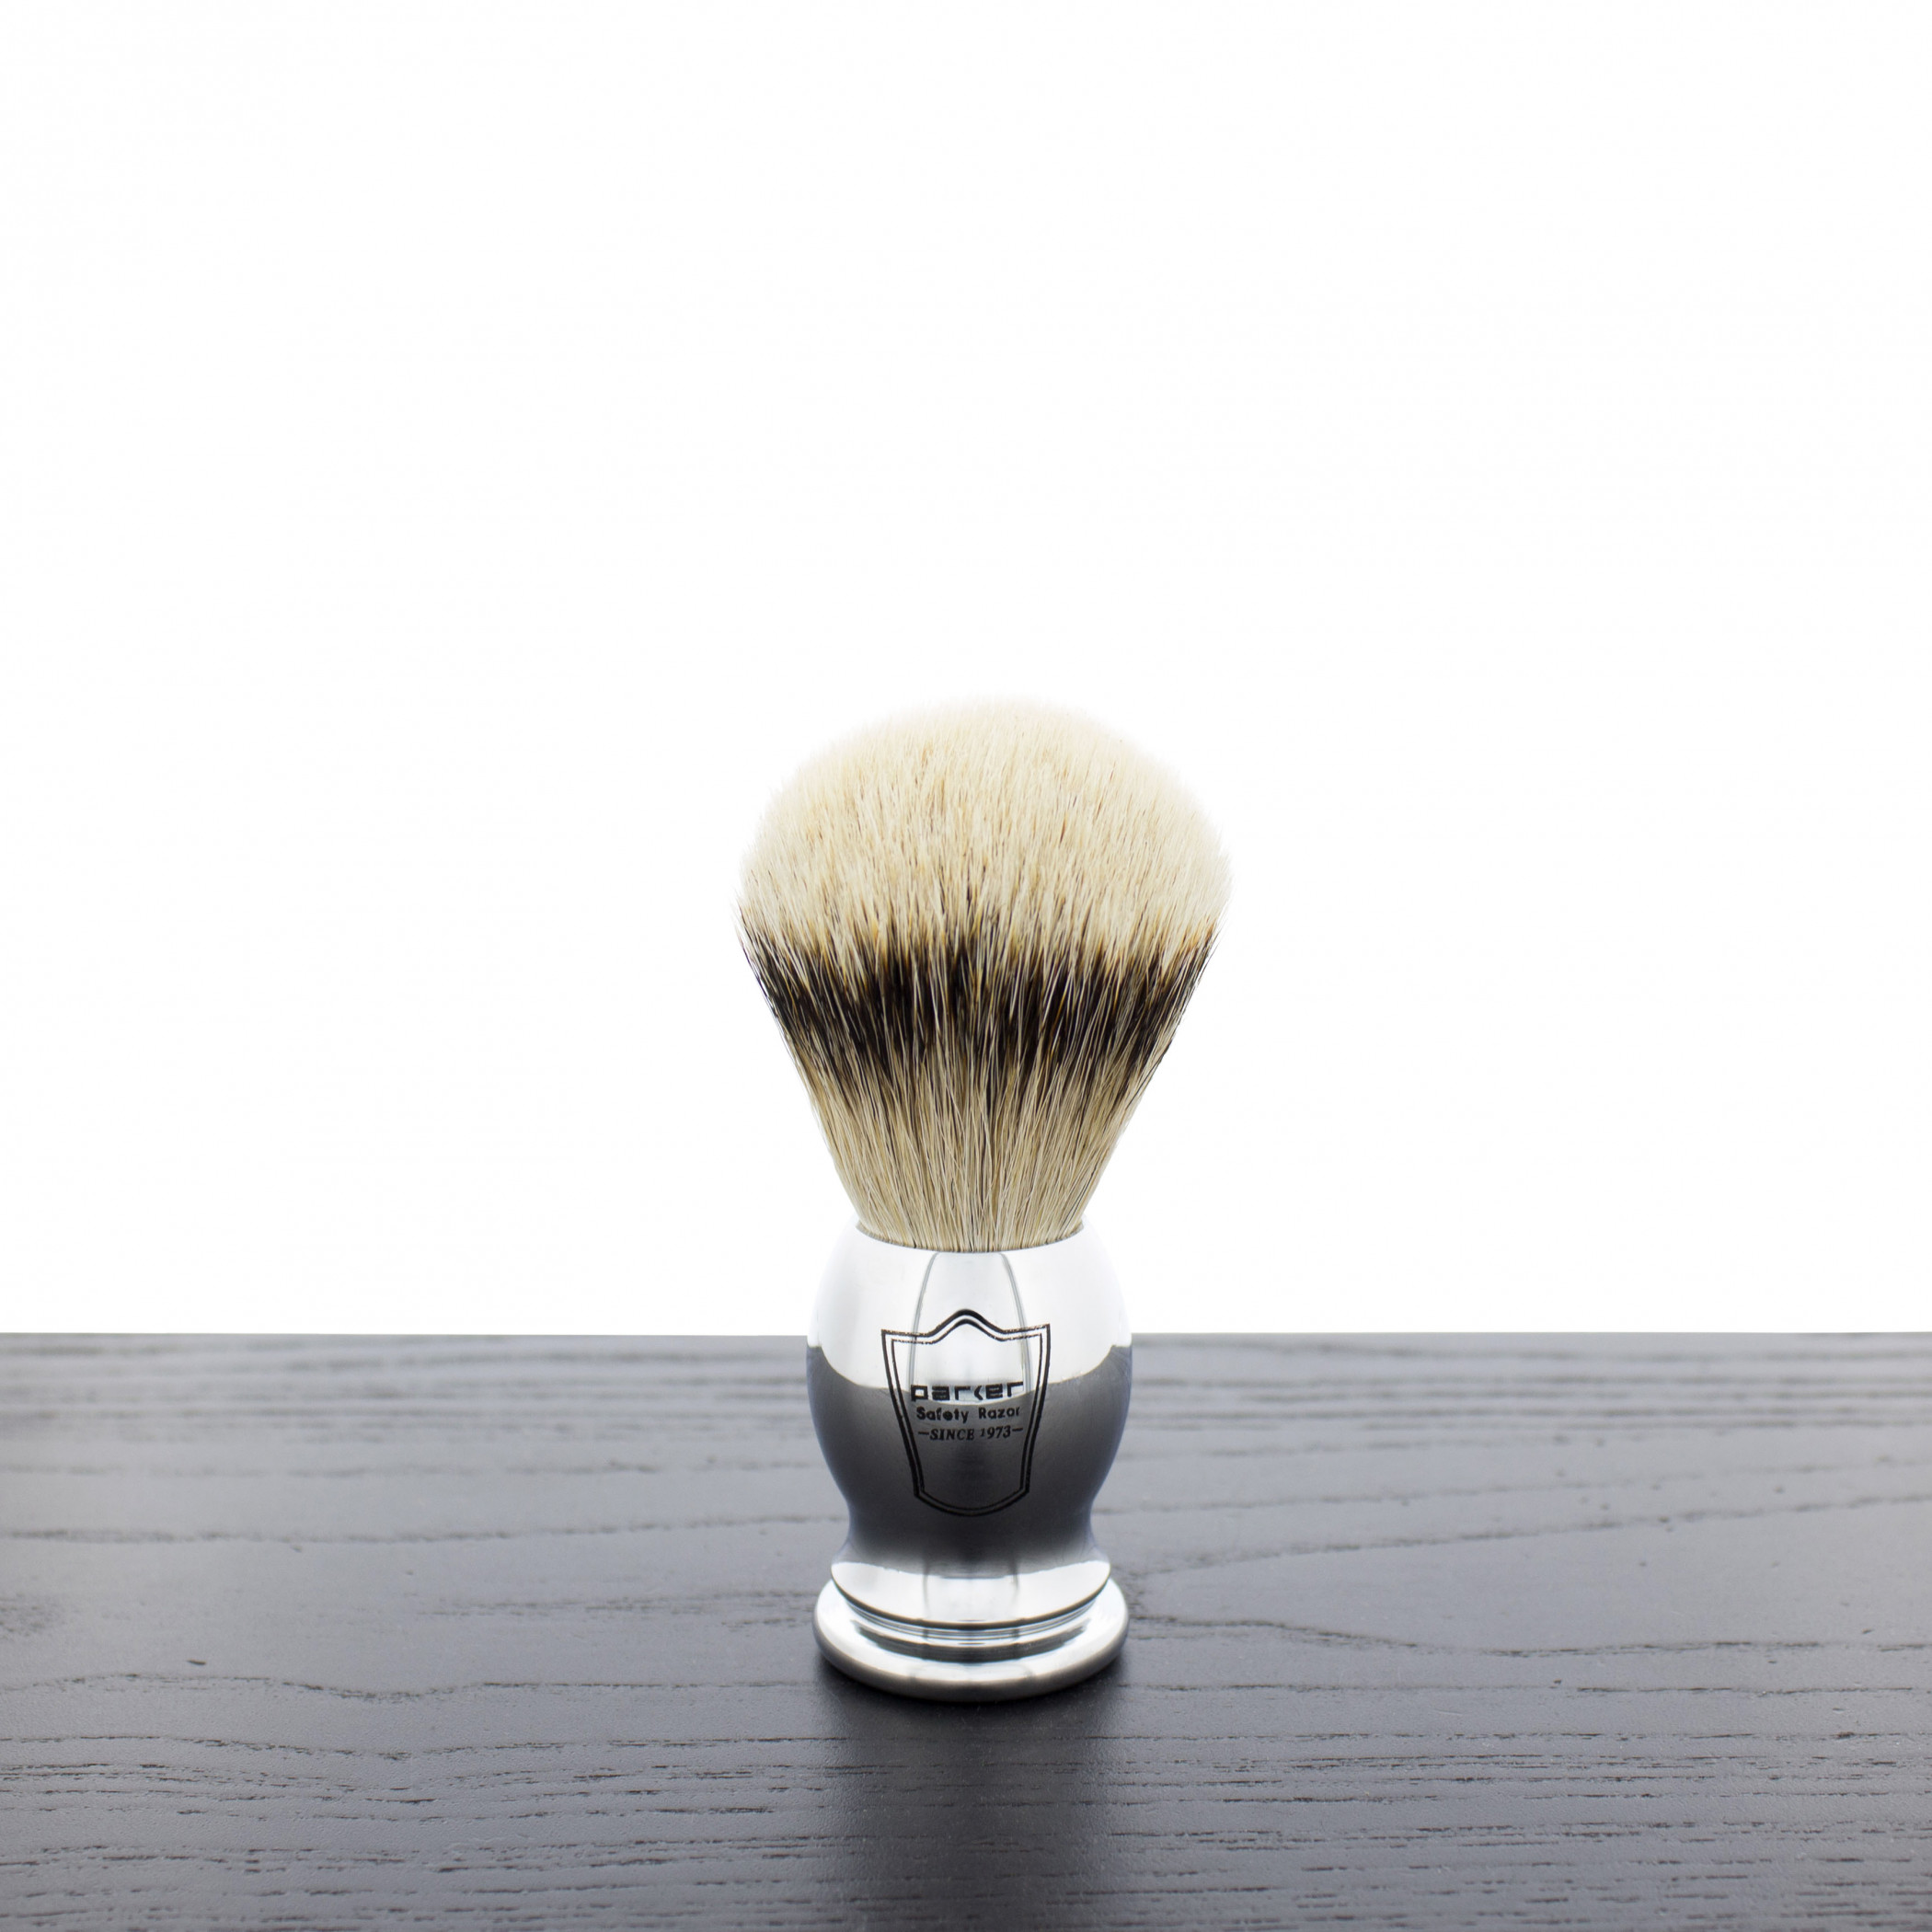 Product image 0 for Parker CHST Silvertip Badger Shaving Brush, Chrome Handle